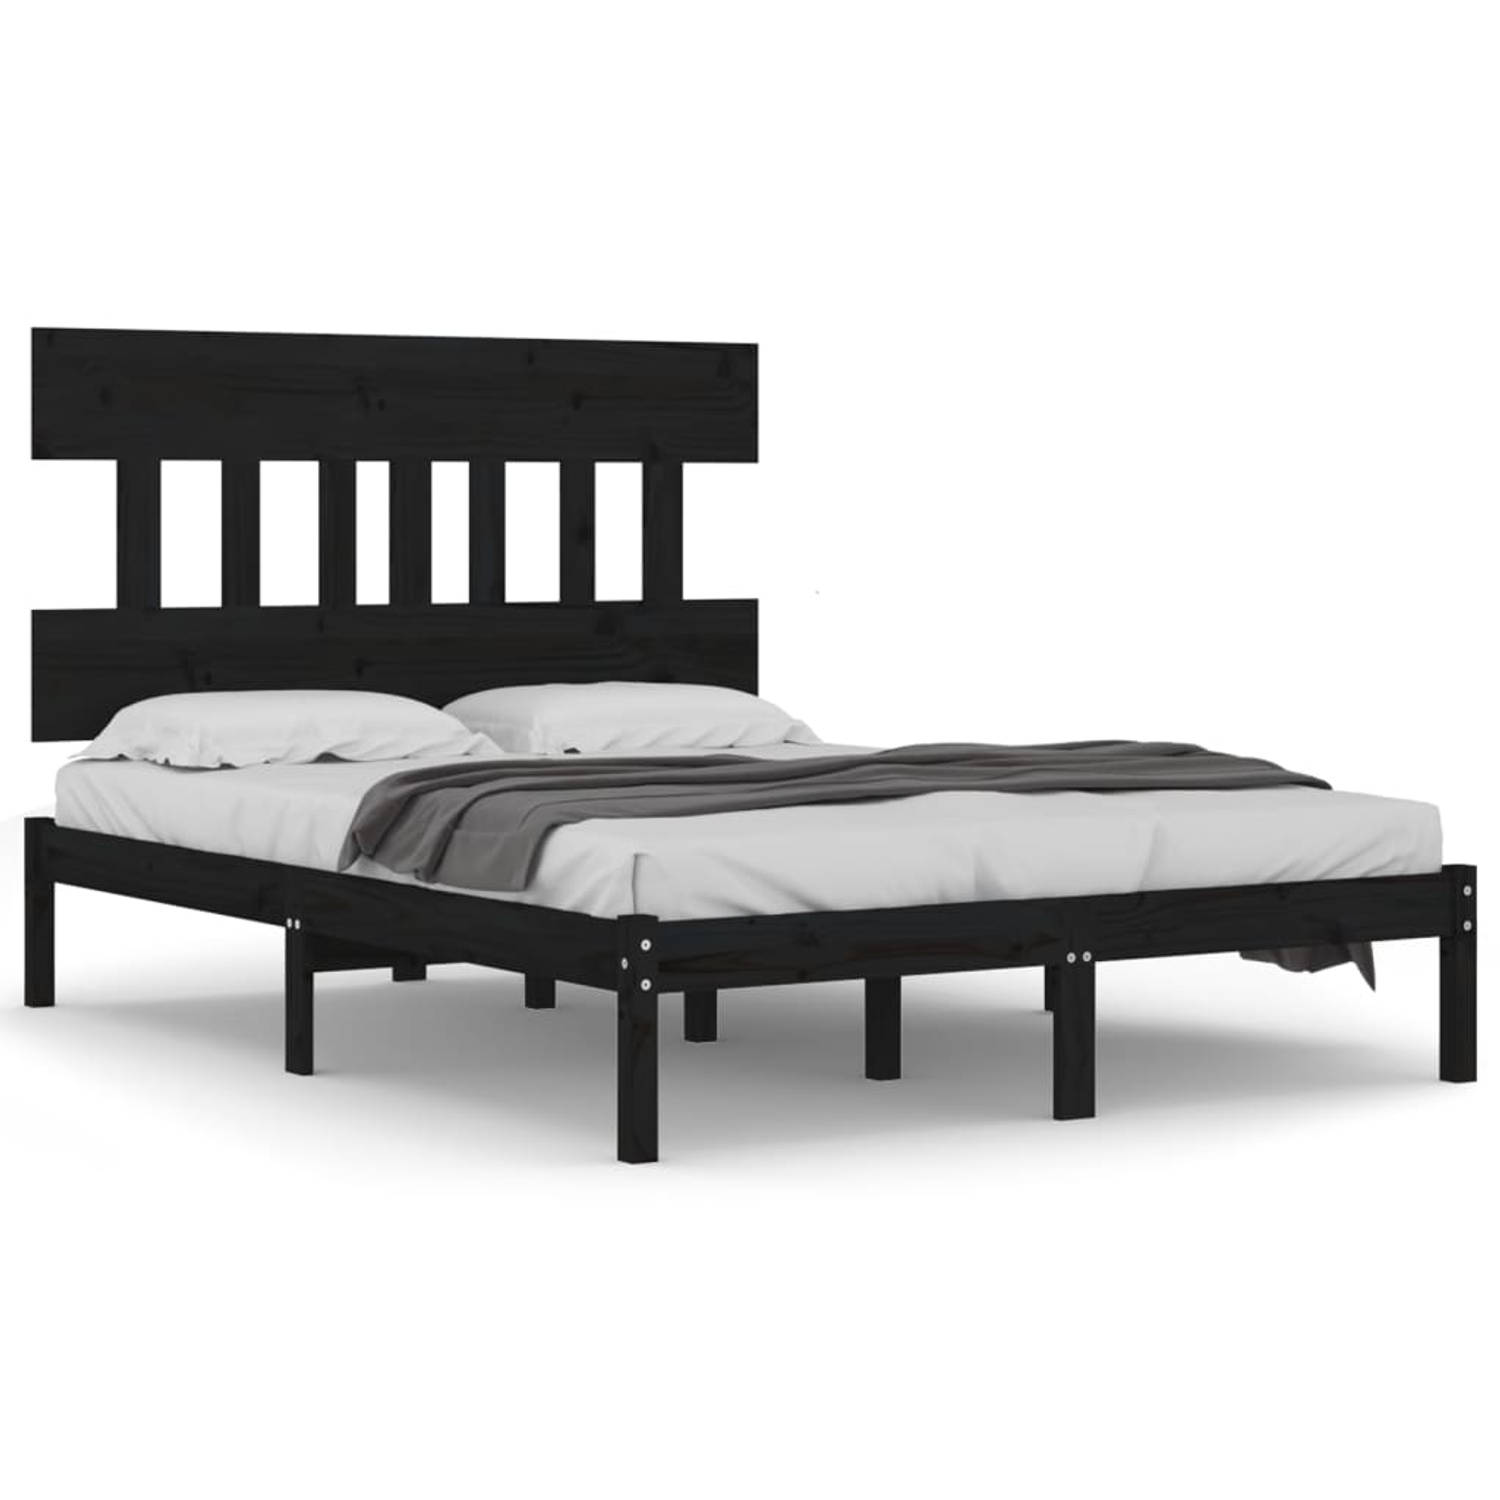 The Living Store Bedframe massief hout zwart 140x190 cm - Bedframe - Bedframes - Tweepersoonsbed - Bed - Bedombouw - Dubbel Bed - Frame - Bed Frame - Ledikant - Bedframe Met Hoofde